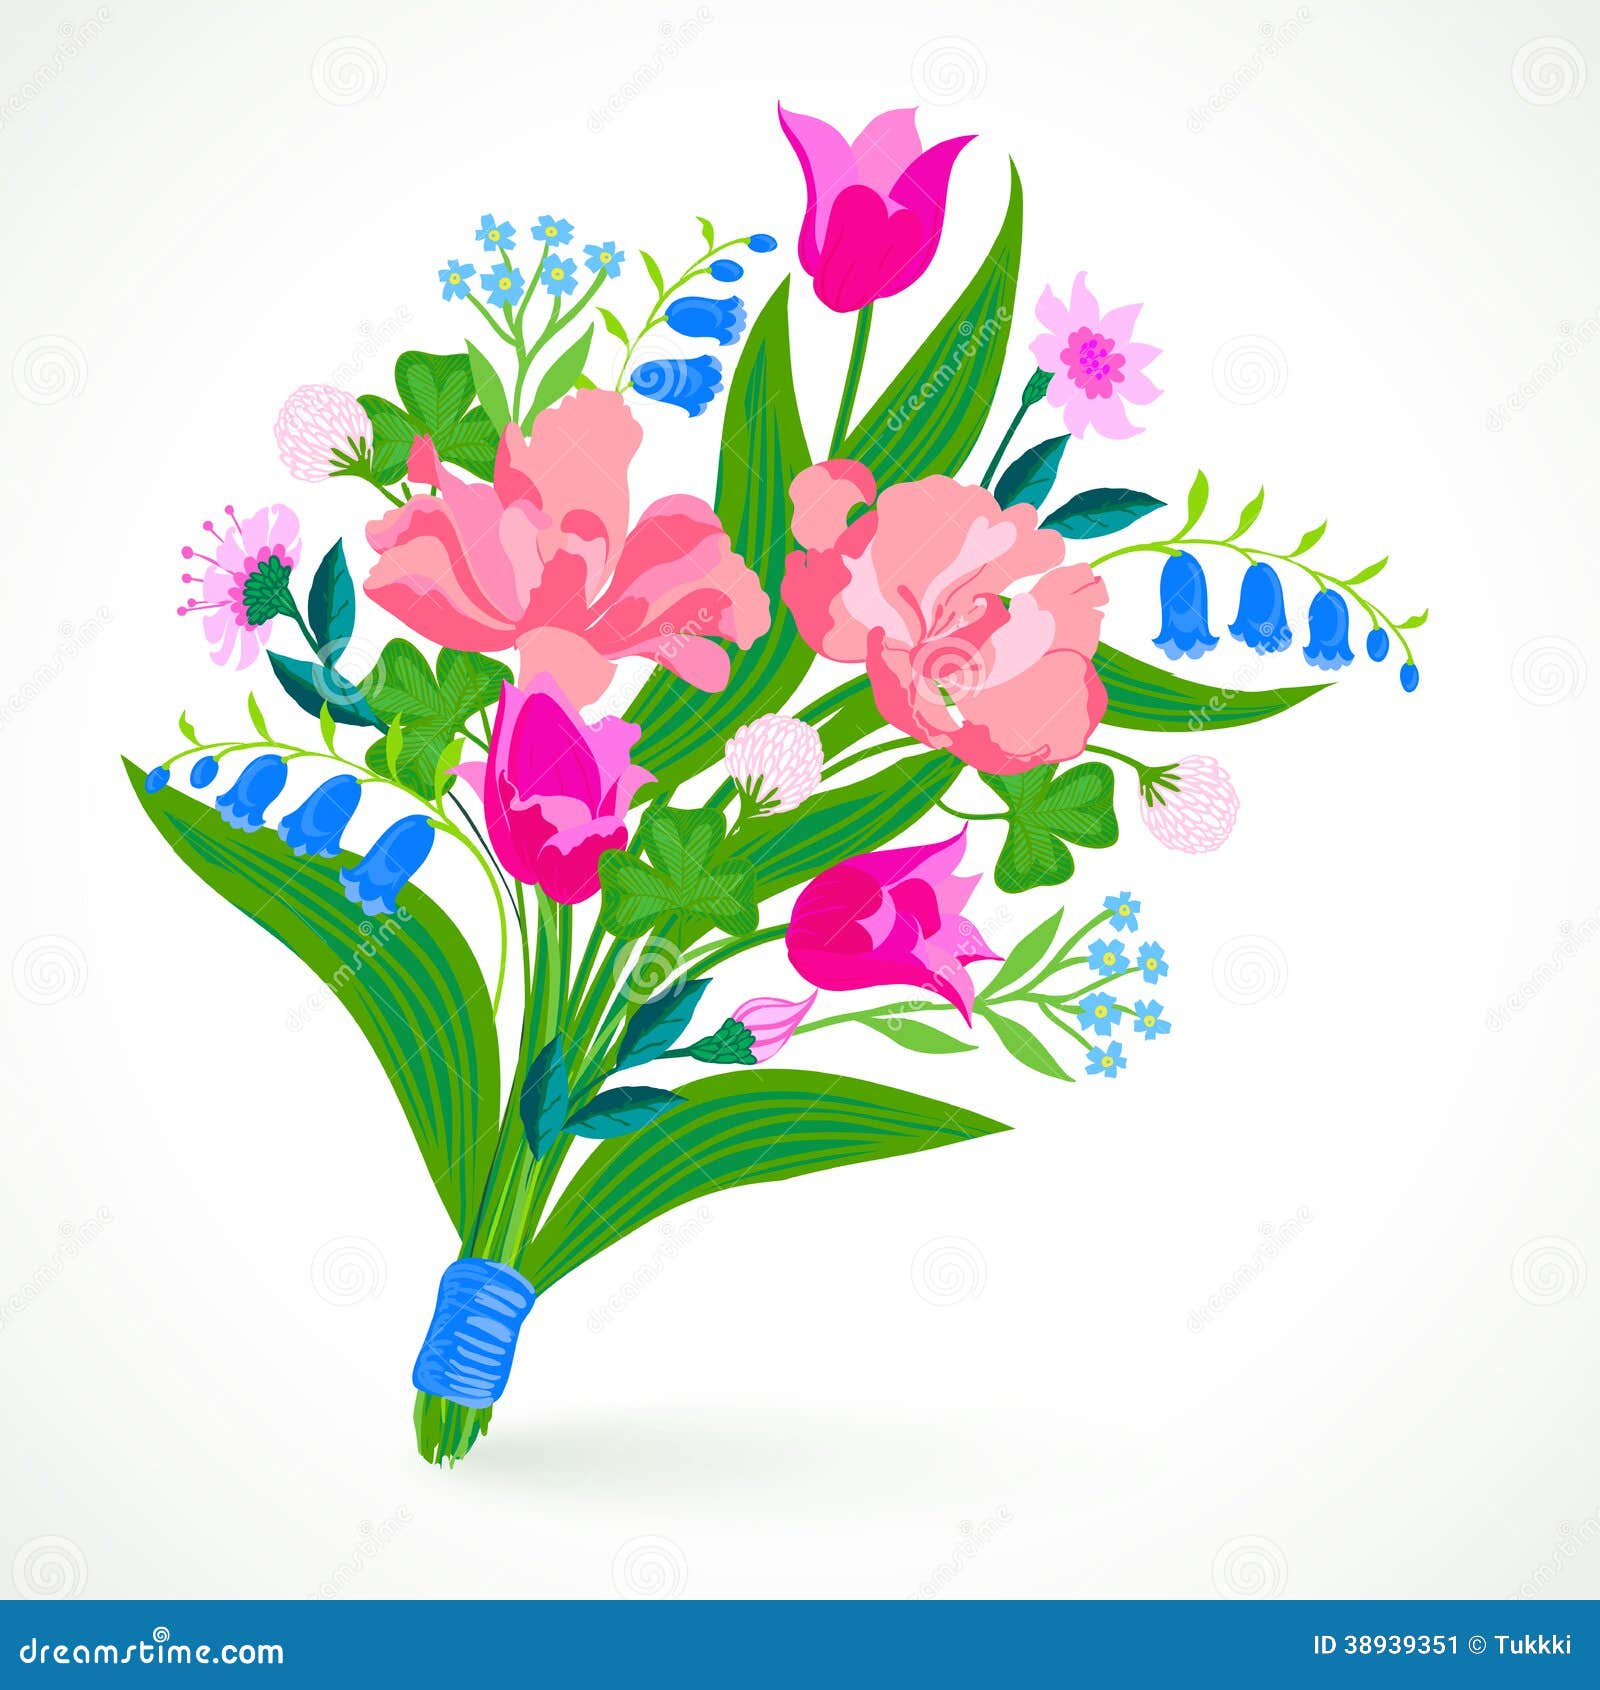 Букет весенних цветов на круге рисунок